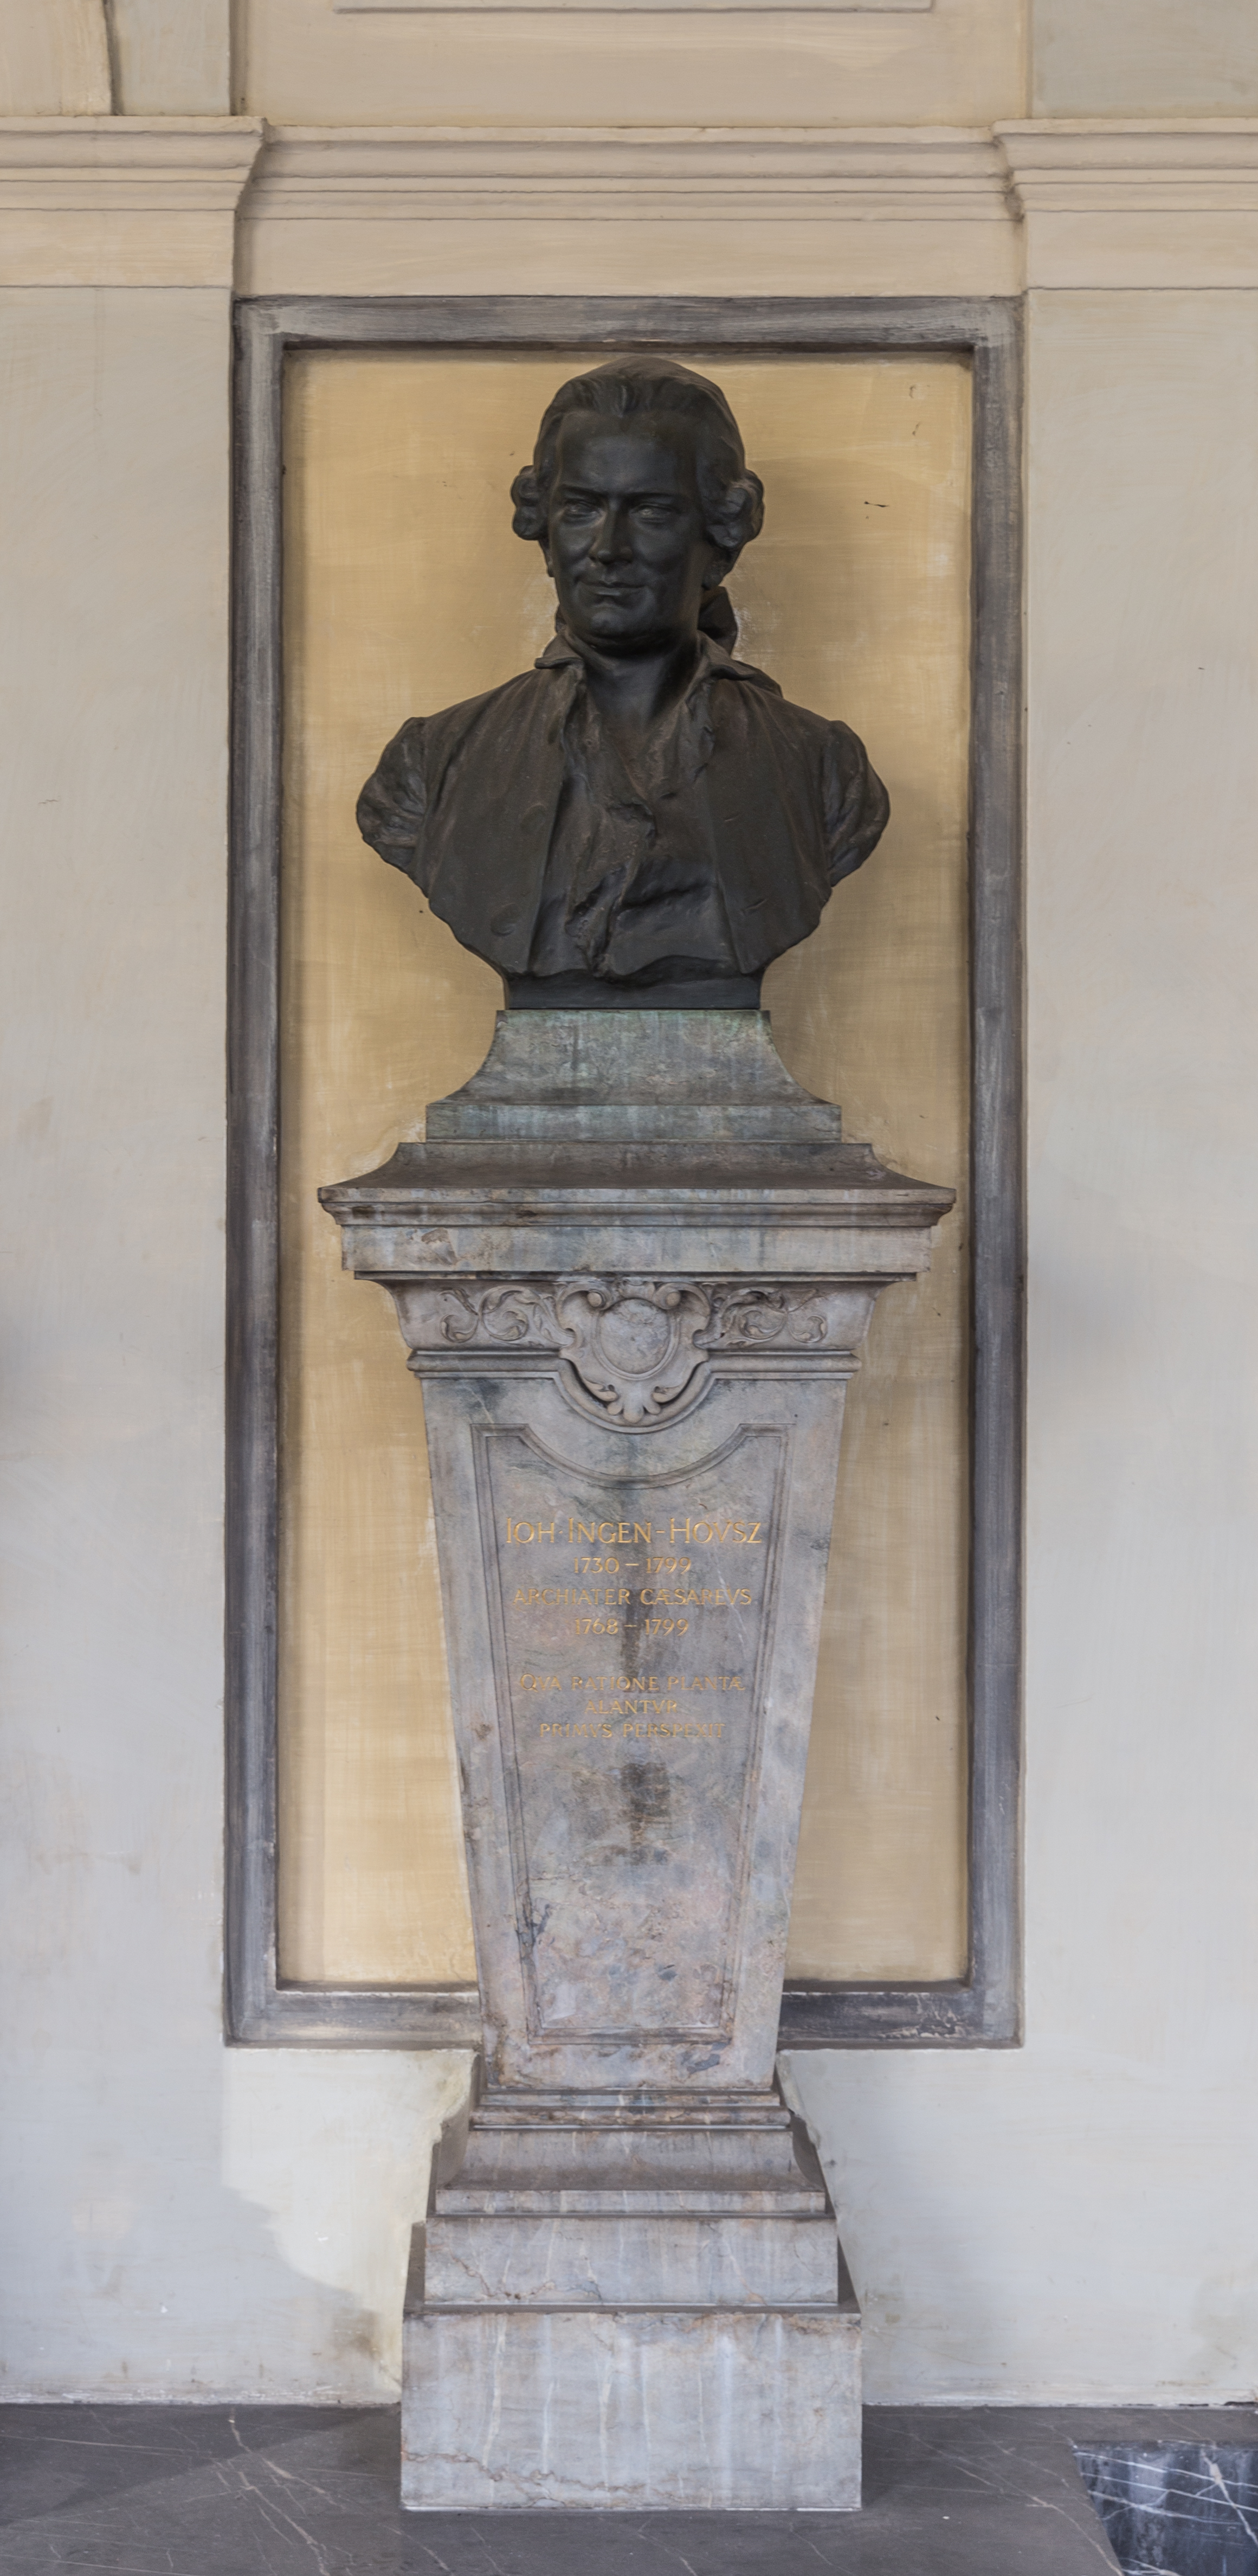 Jan Ingen-Housz (1730-1799), Nr. 37 bust (bronze) in the Arkadenhof of the University of Vienna-1872